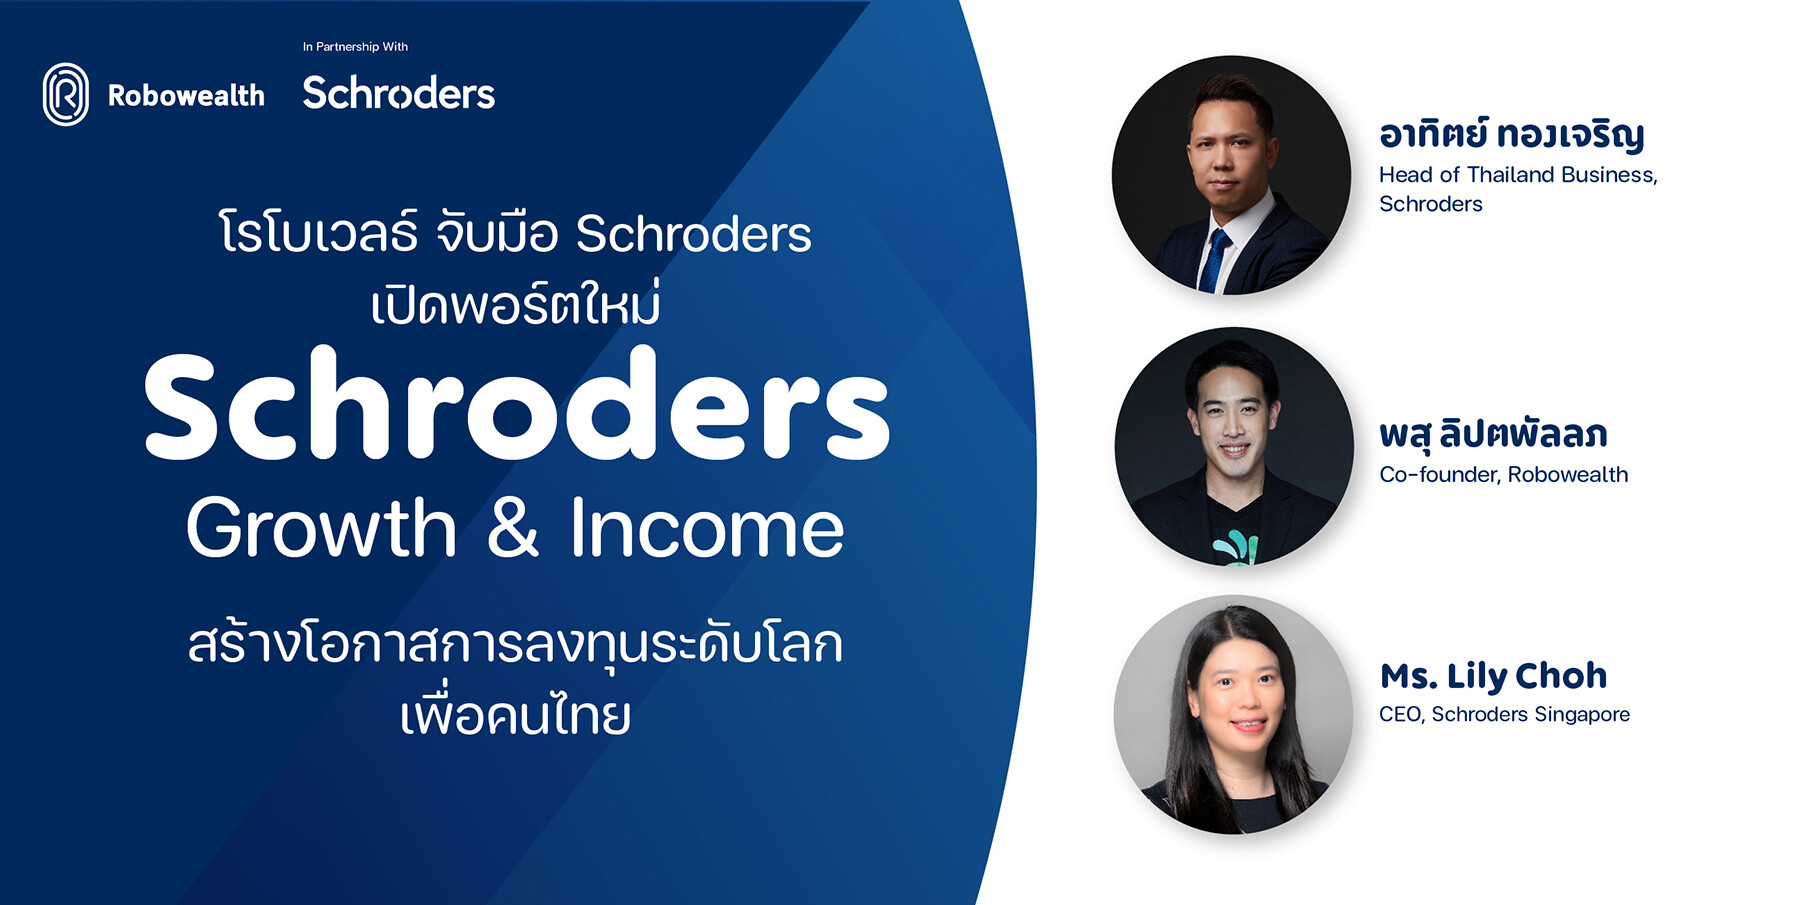 โรโบเวลธ์ จับมือ Schroders เปิดพอร์ตใหม่ "Schroders Growth & Income" สร้างโอกาสการลงทุนระดับโลกเพื่อคนไทย